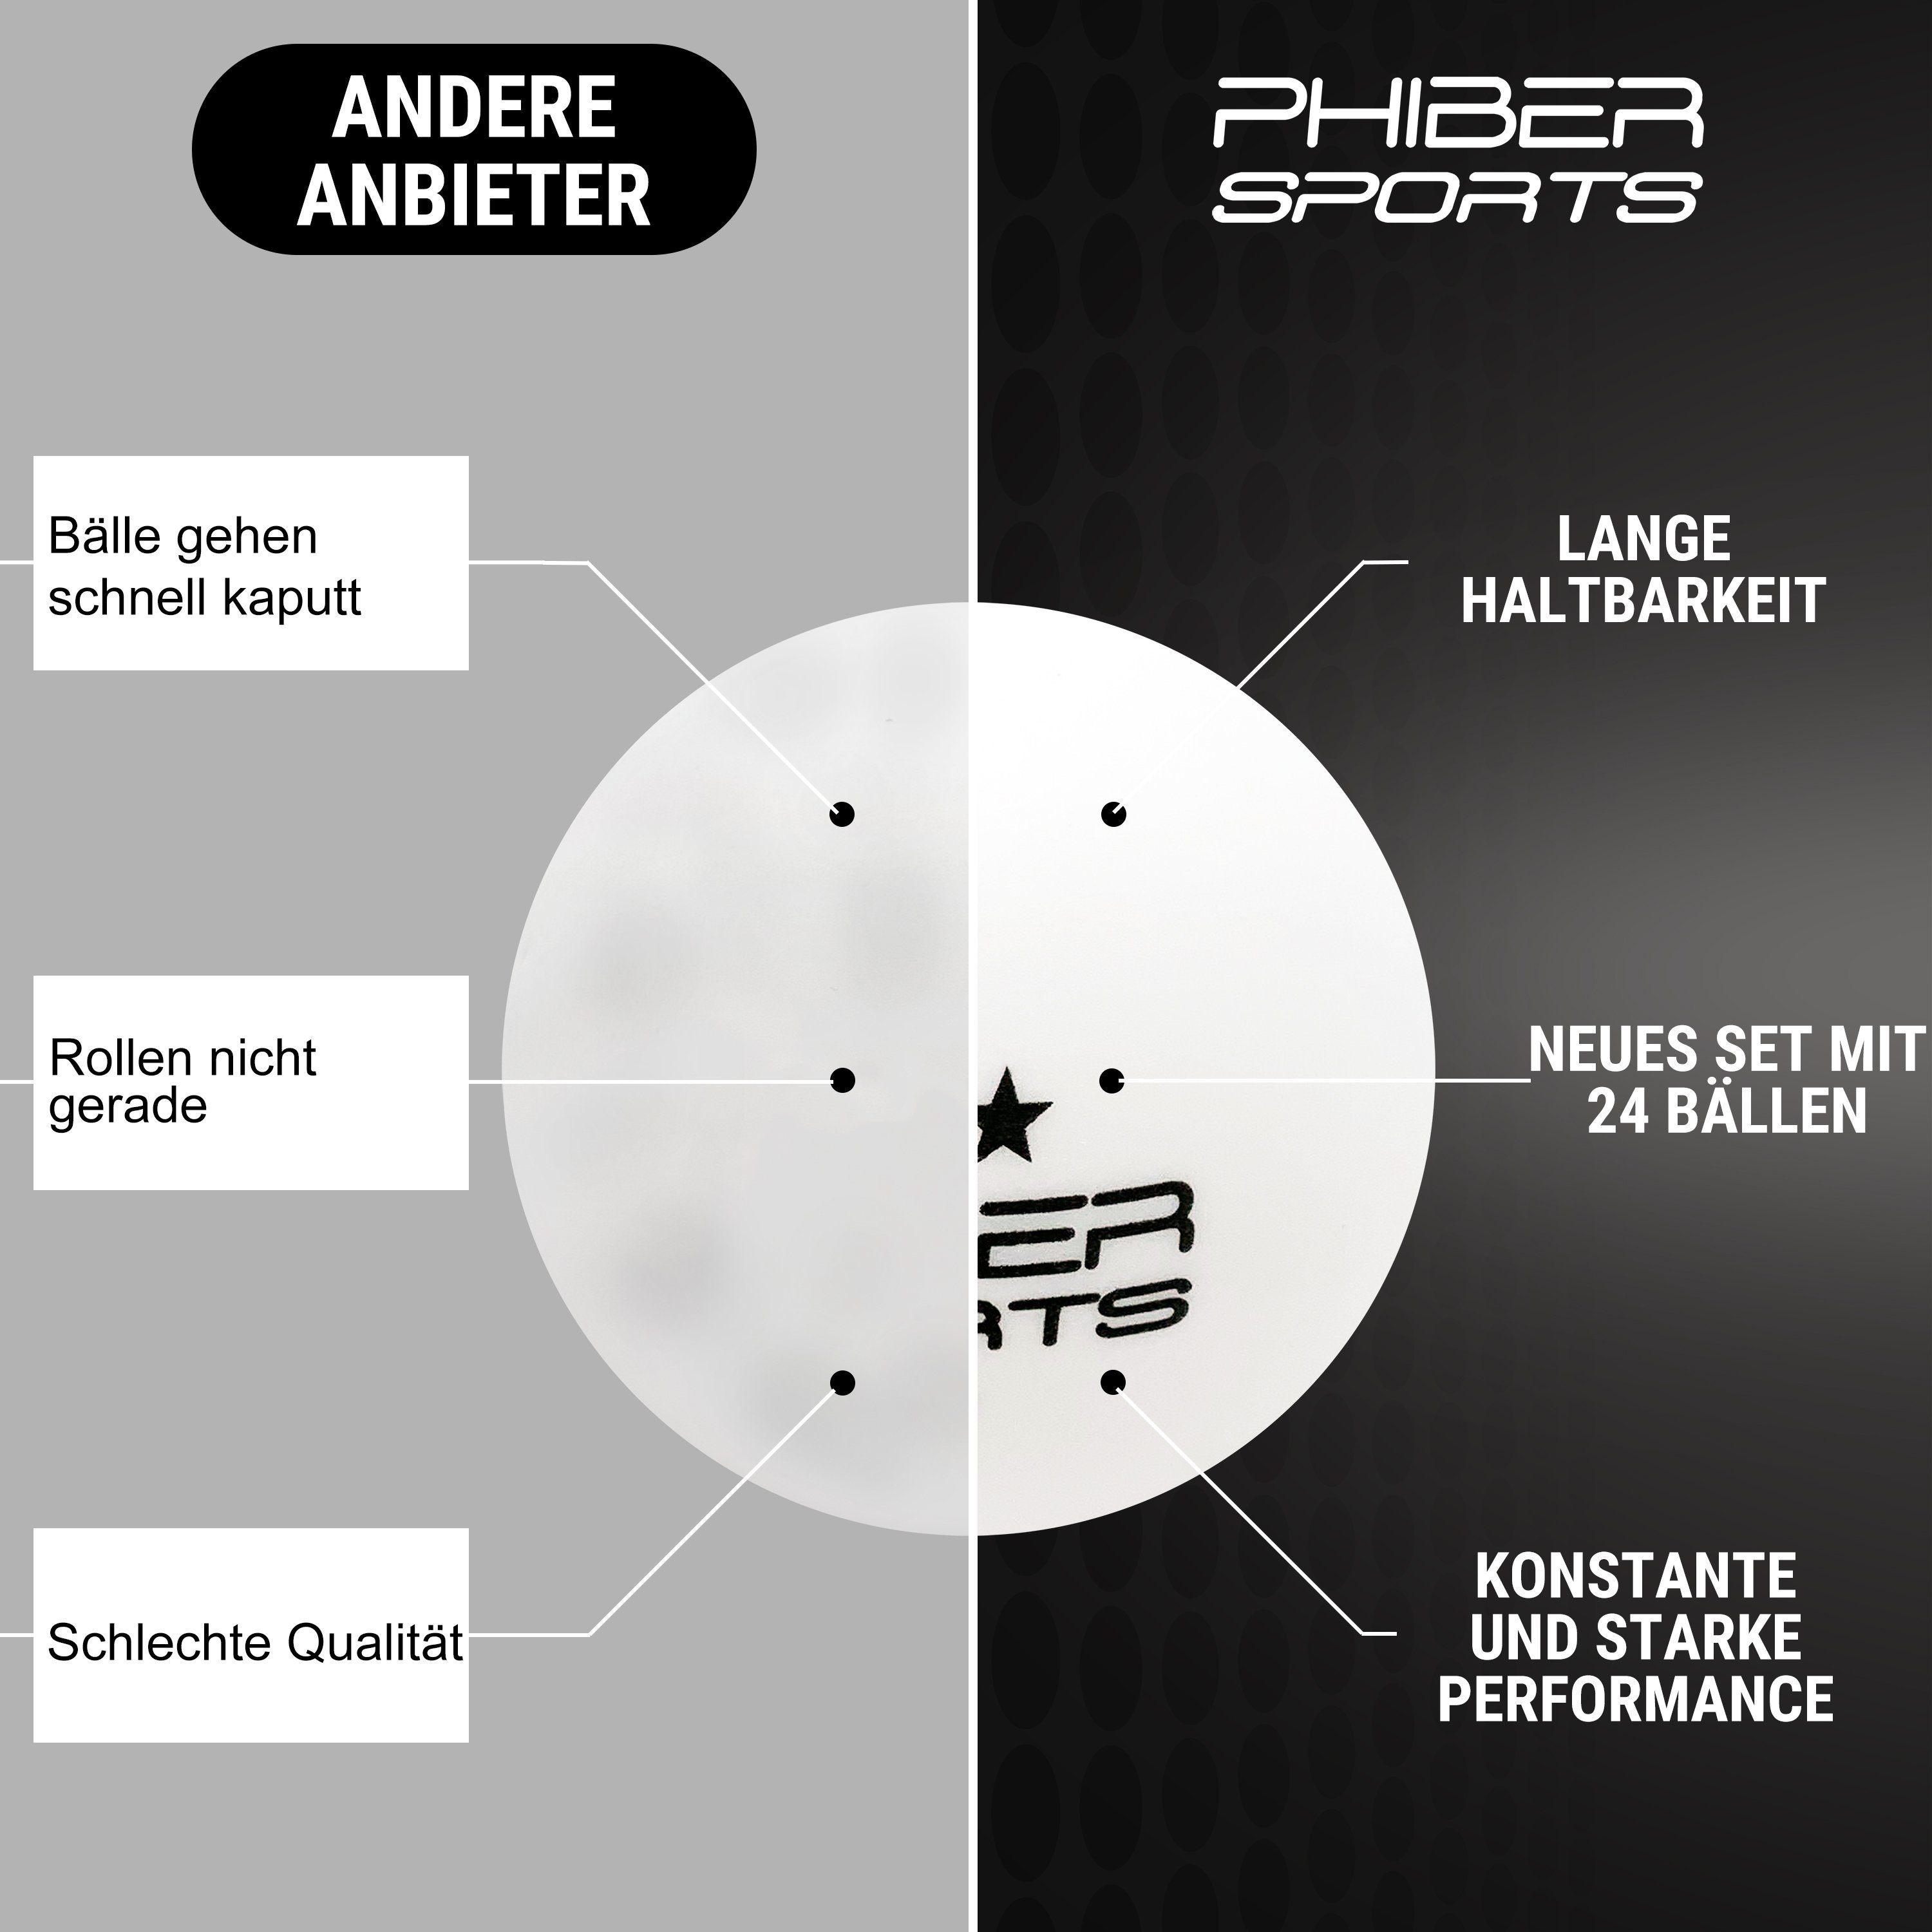 PHIBER-SPORTS Tischtennisball »Weiß 3 Stern [24 Stück] - Ideal für  Anfänger, Familien und Profis« (24 weiße 3 STERN Tischtennisbälle), Nach  Wettbewerbsrichtlinien produziert